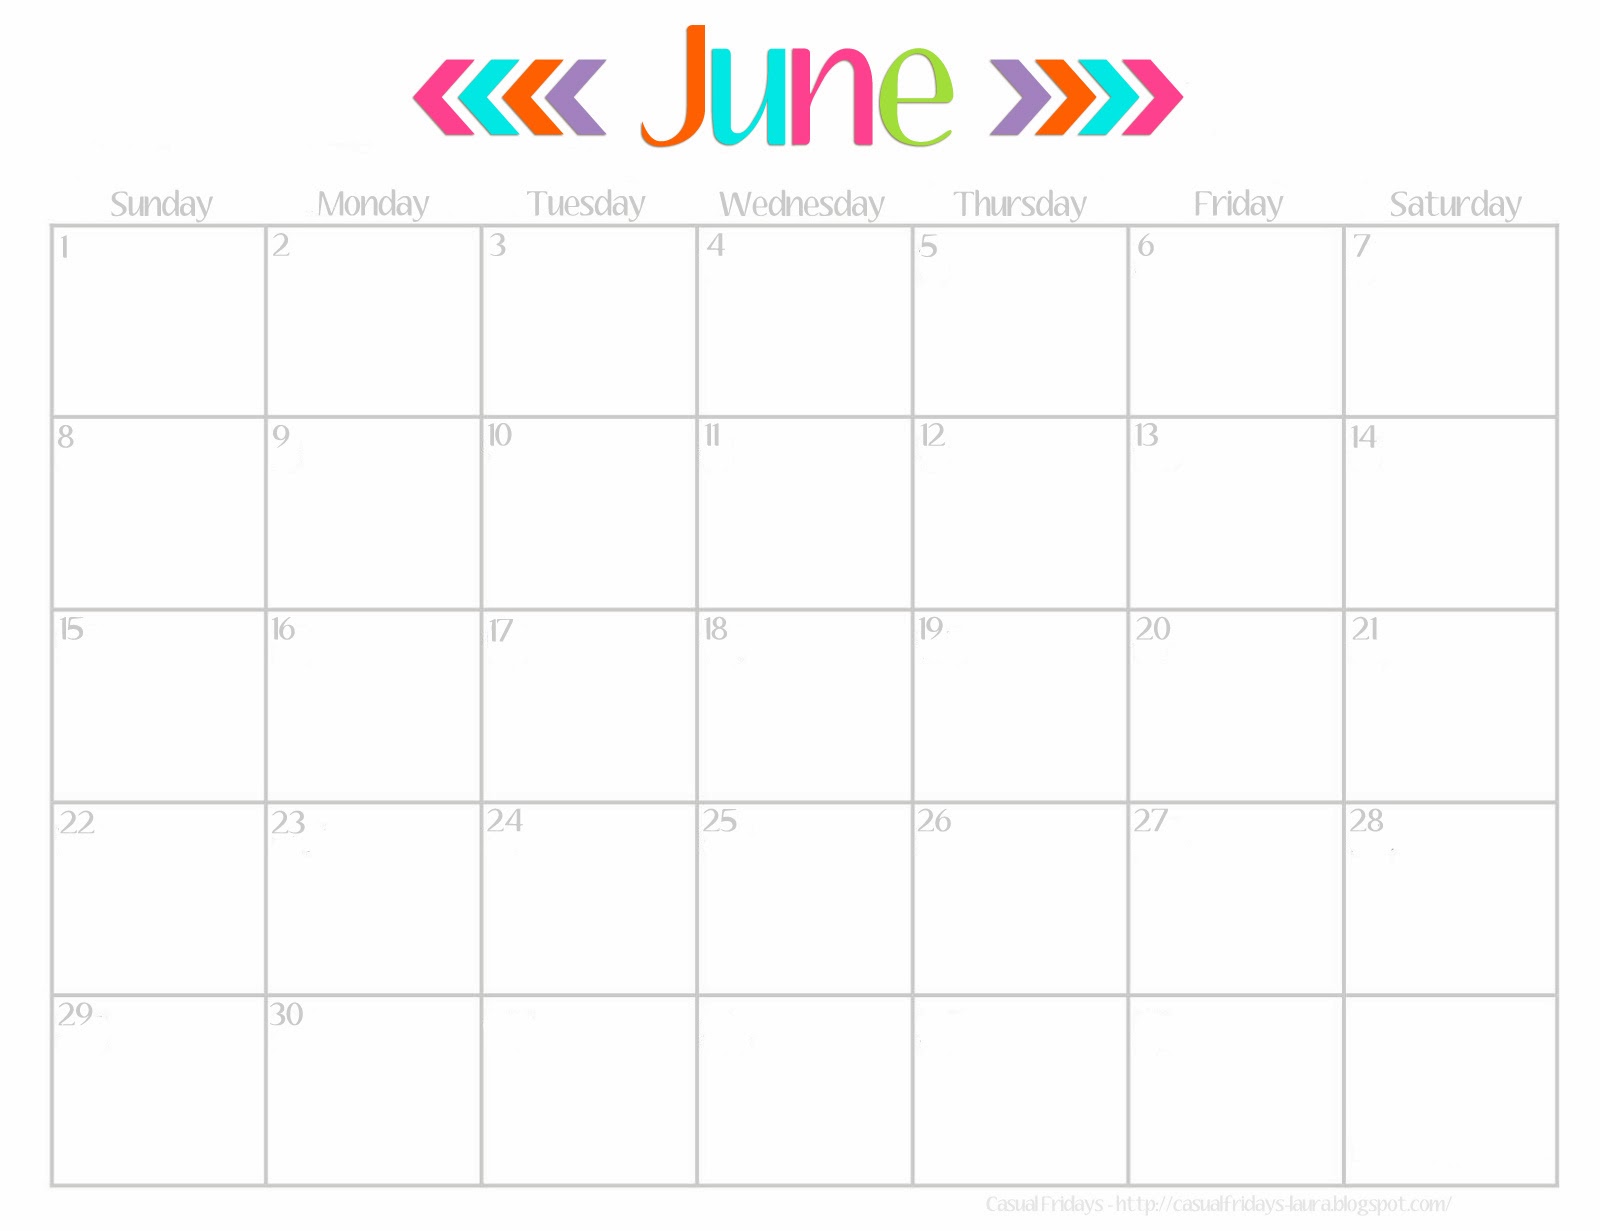 5 Best Images of Cute June 2014 Calendar Printable Free Cute 